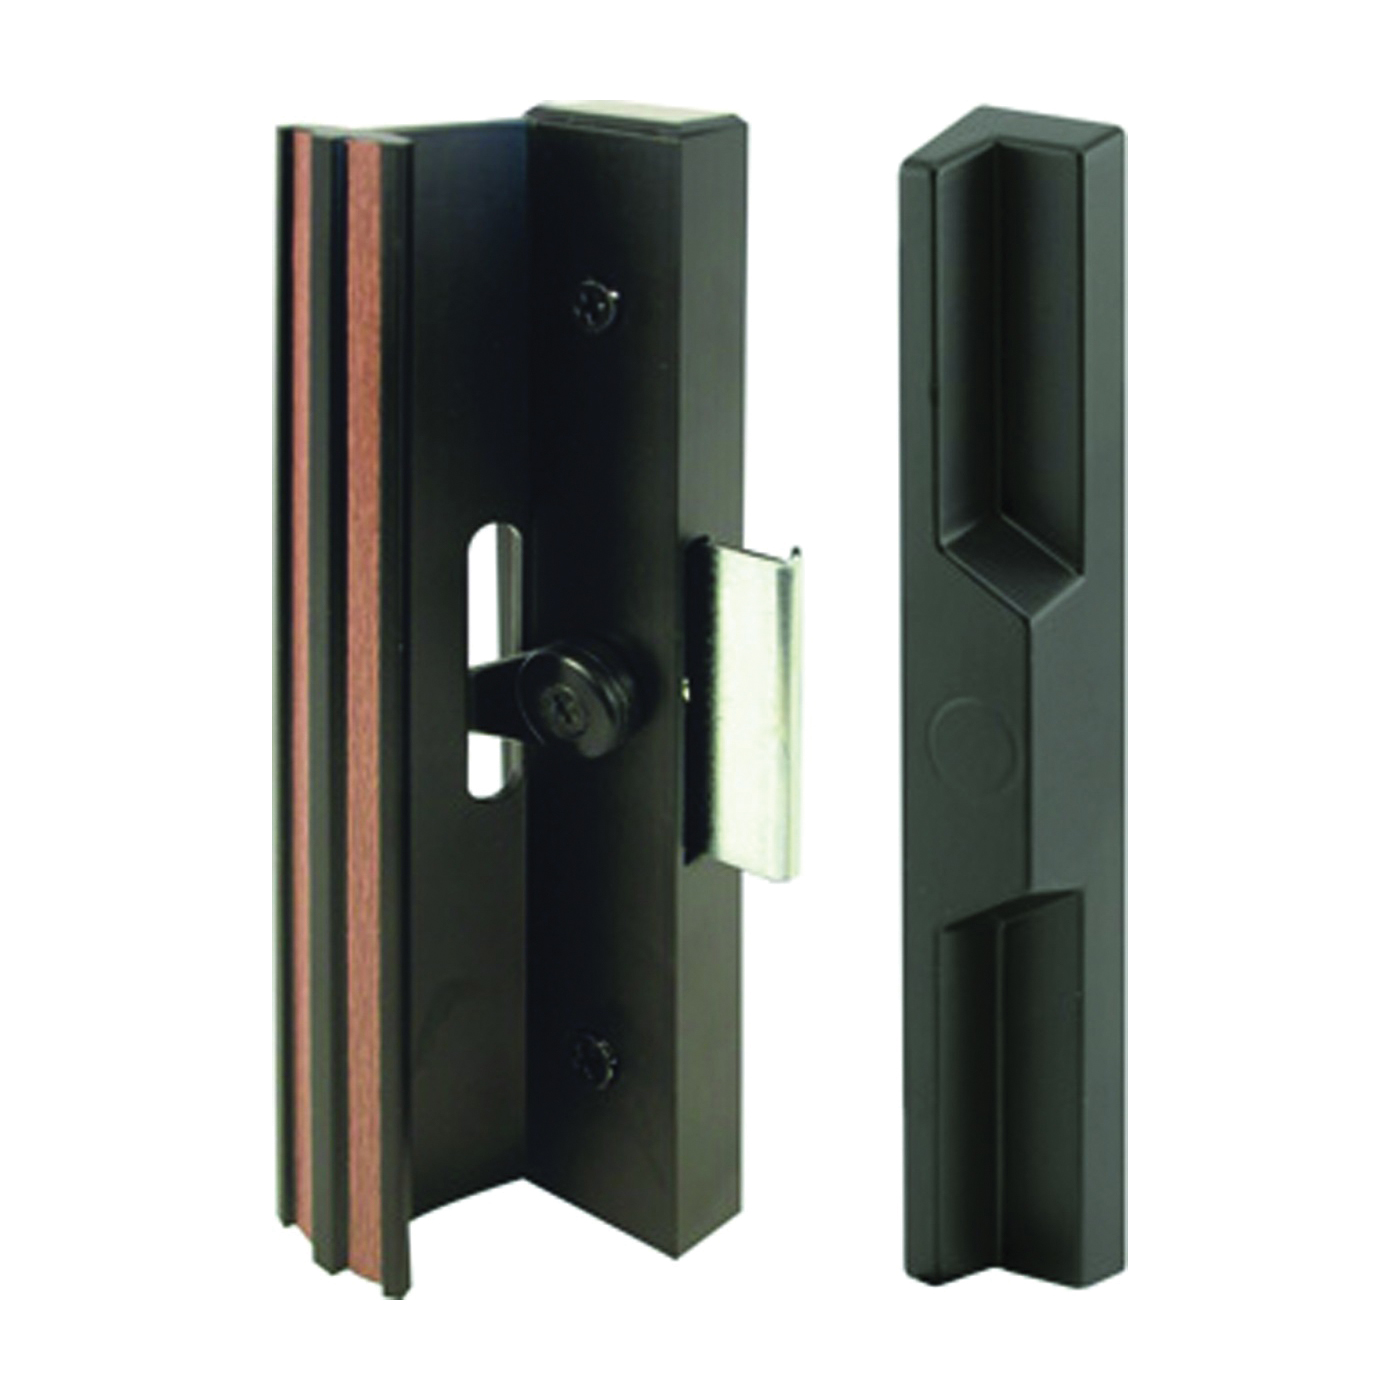 C 1106 Handleset, Aluminum, Black, For: 3/4 to 1-3/4 in THK Glass Sliding Doors